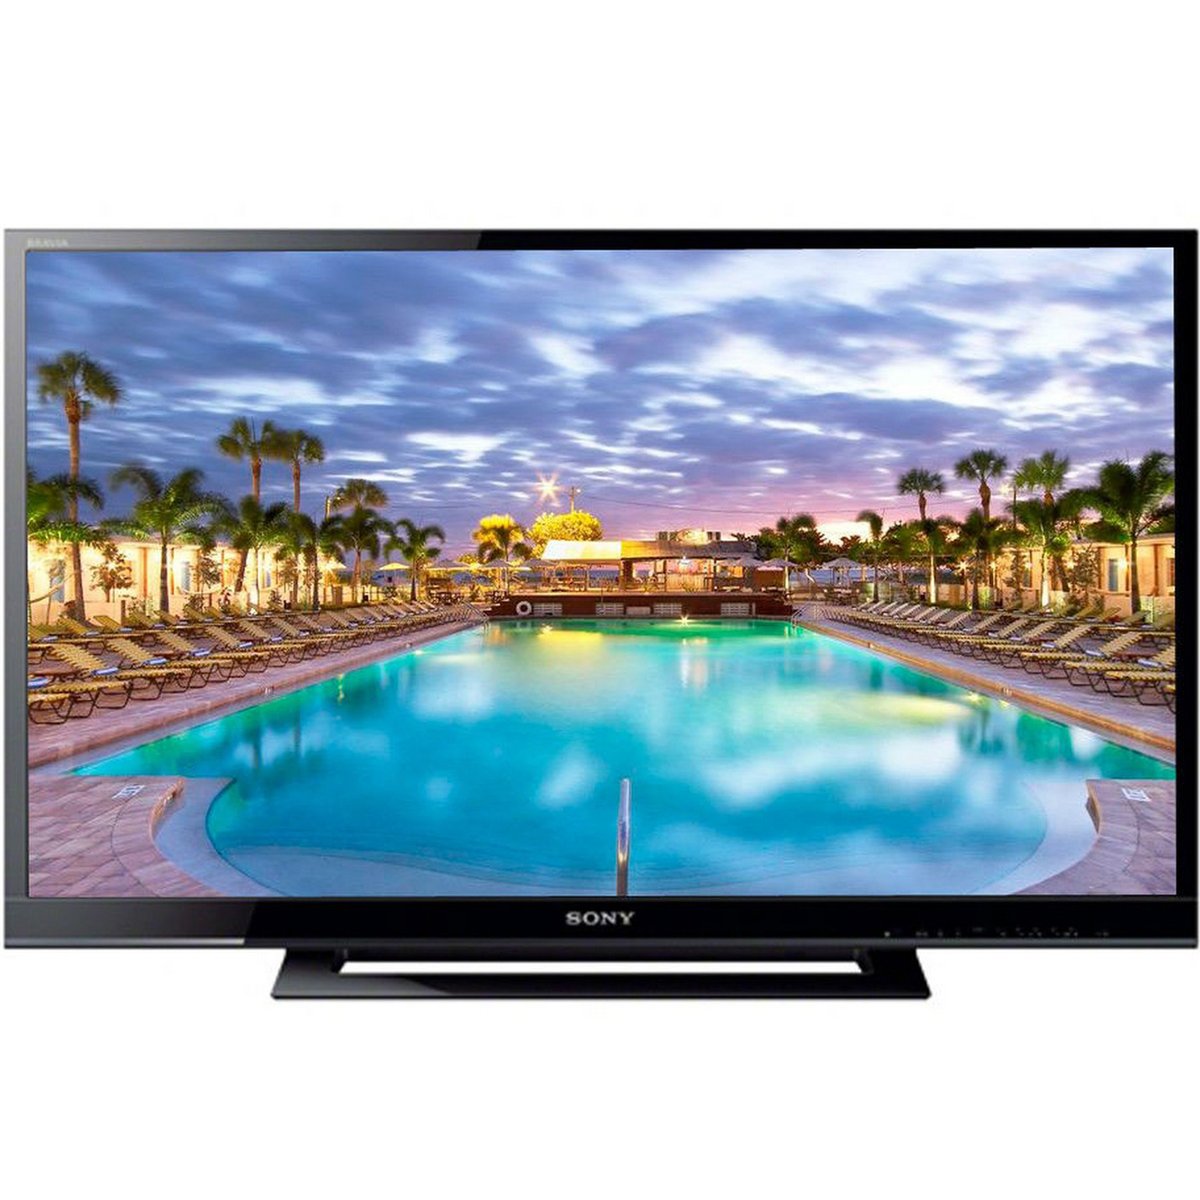 Sony Full HD LED TV KLV-40R352E 40inch